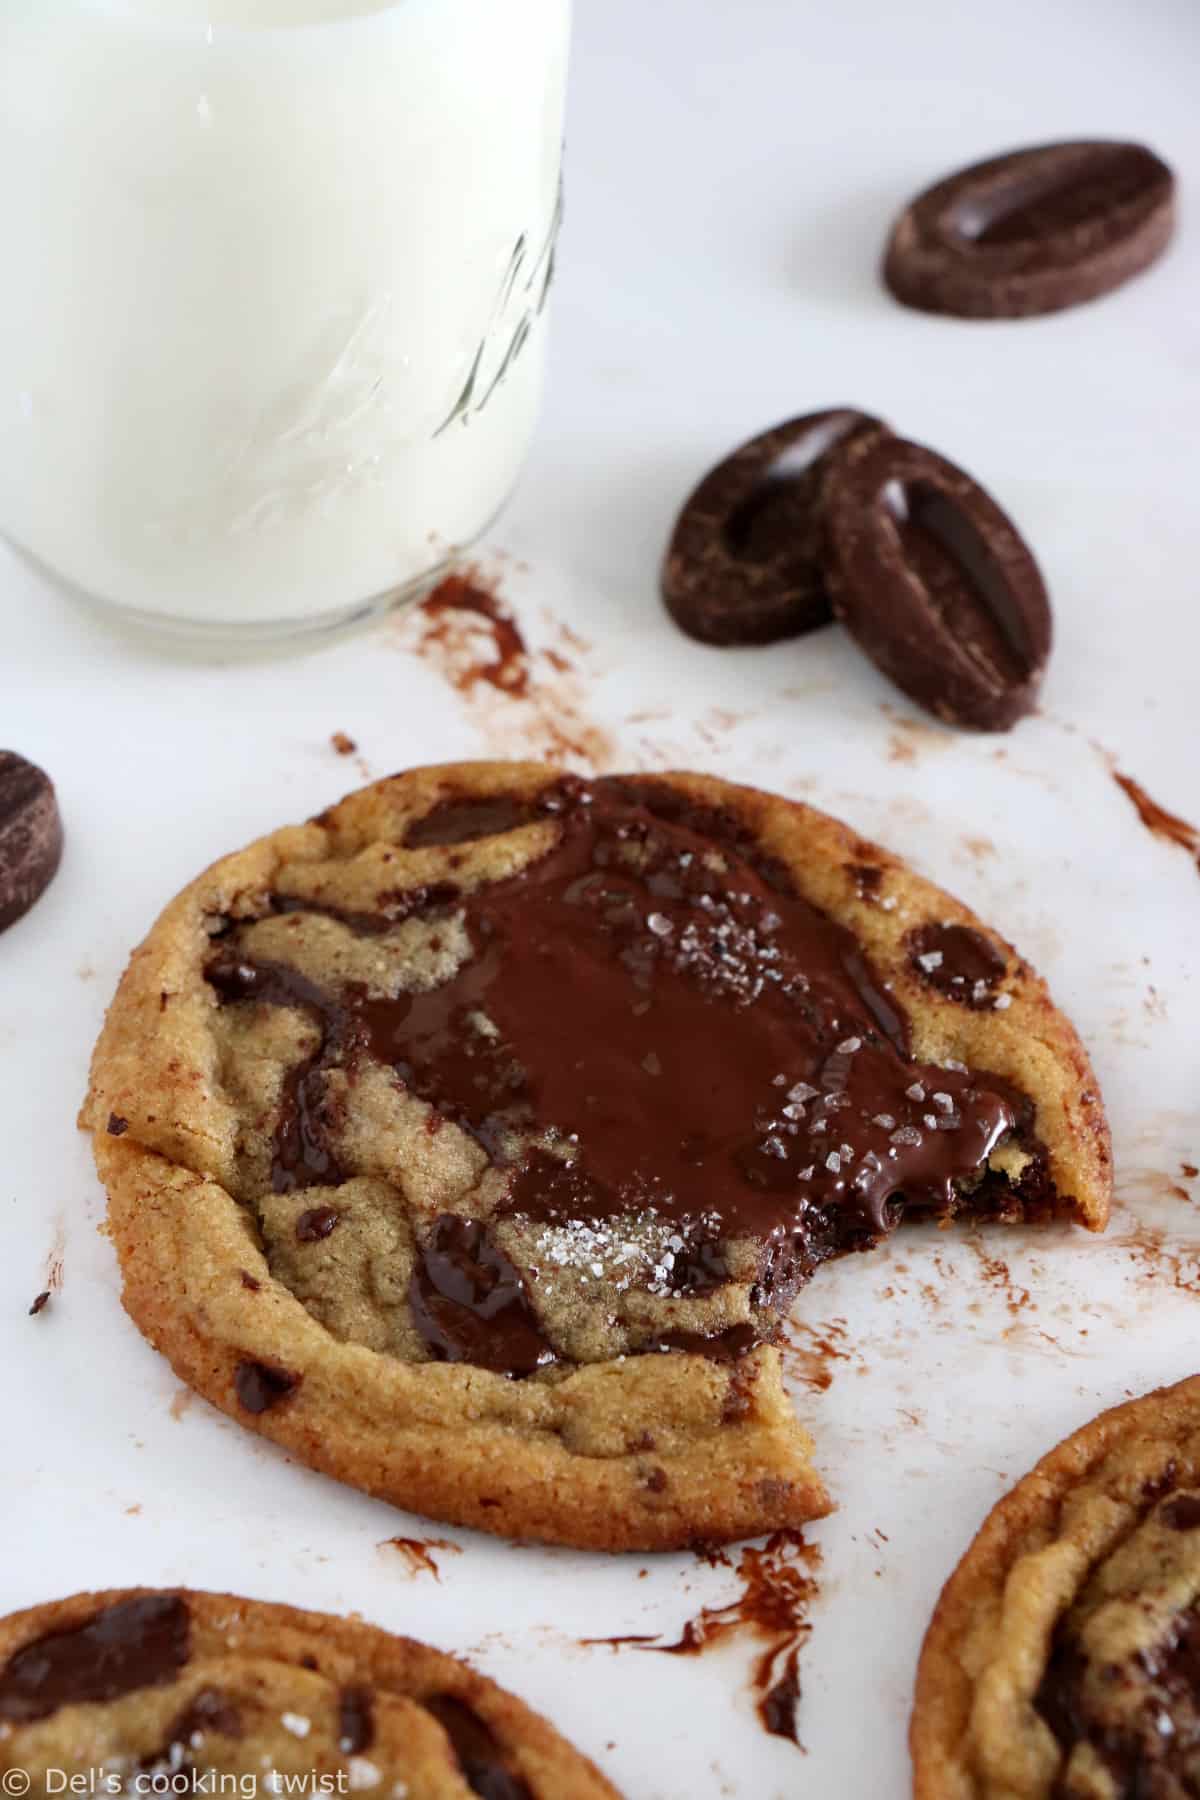 La recette des meilleurs cookies aux pépites de chocolat enfin dévoilée ! Riches en beurre, légèrement croustillants et chewy. On adore !